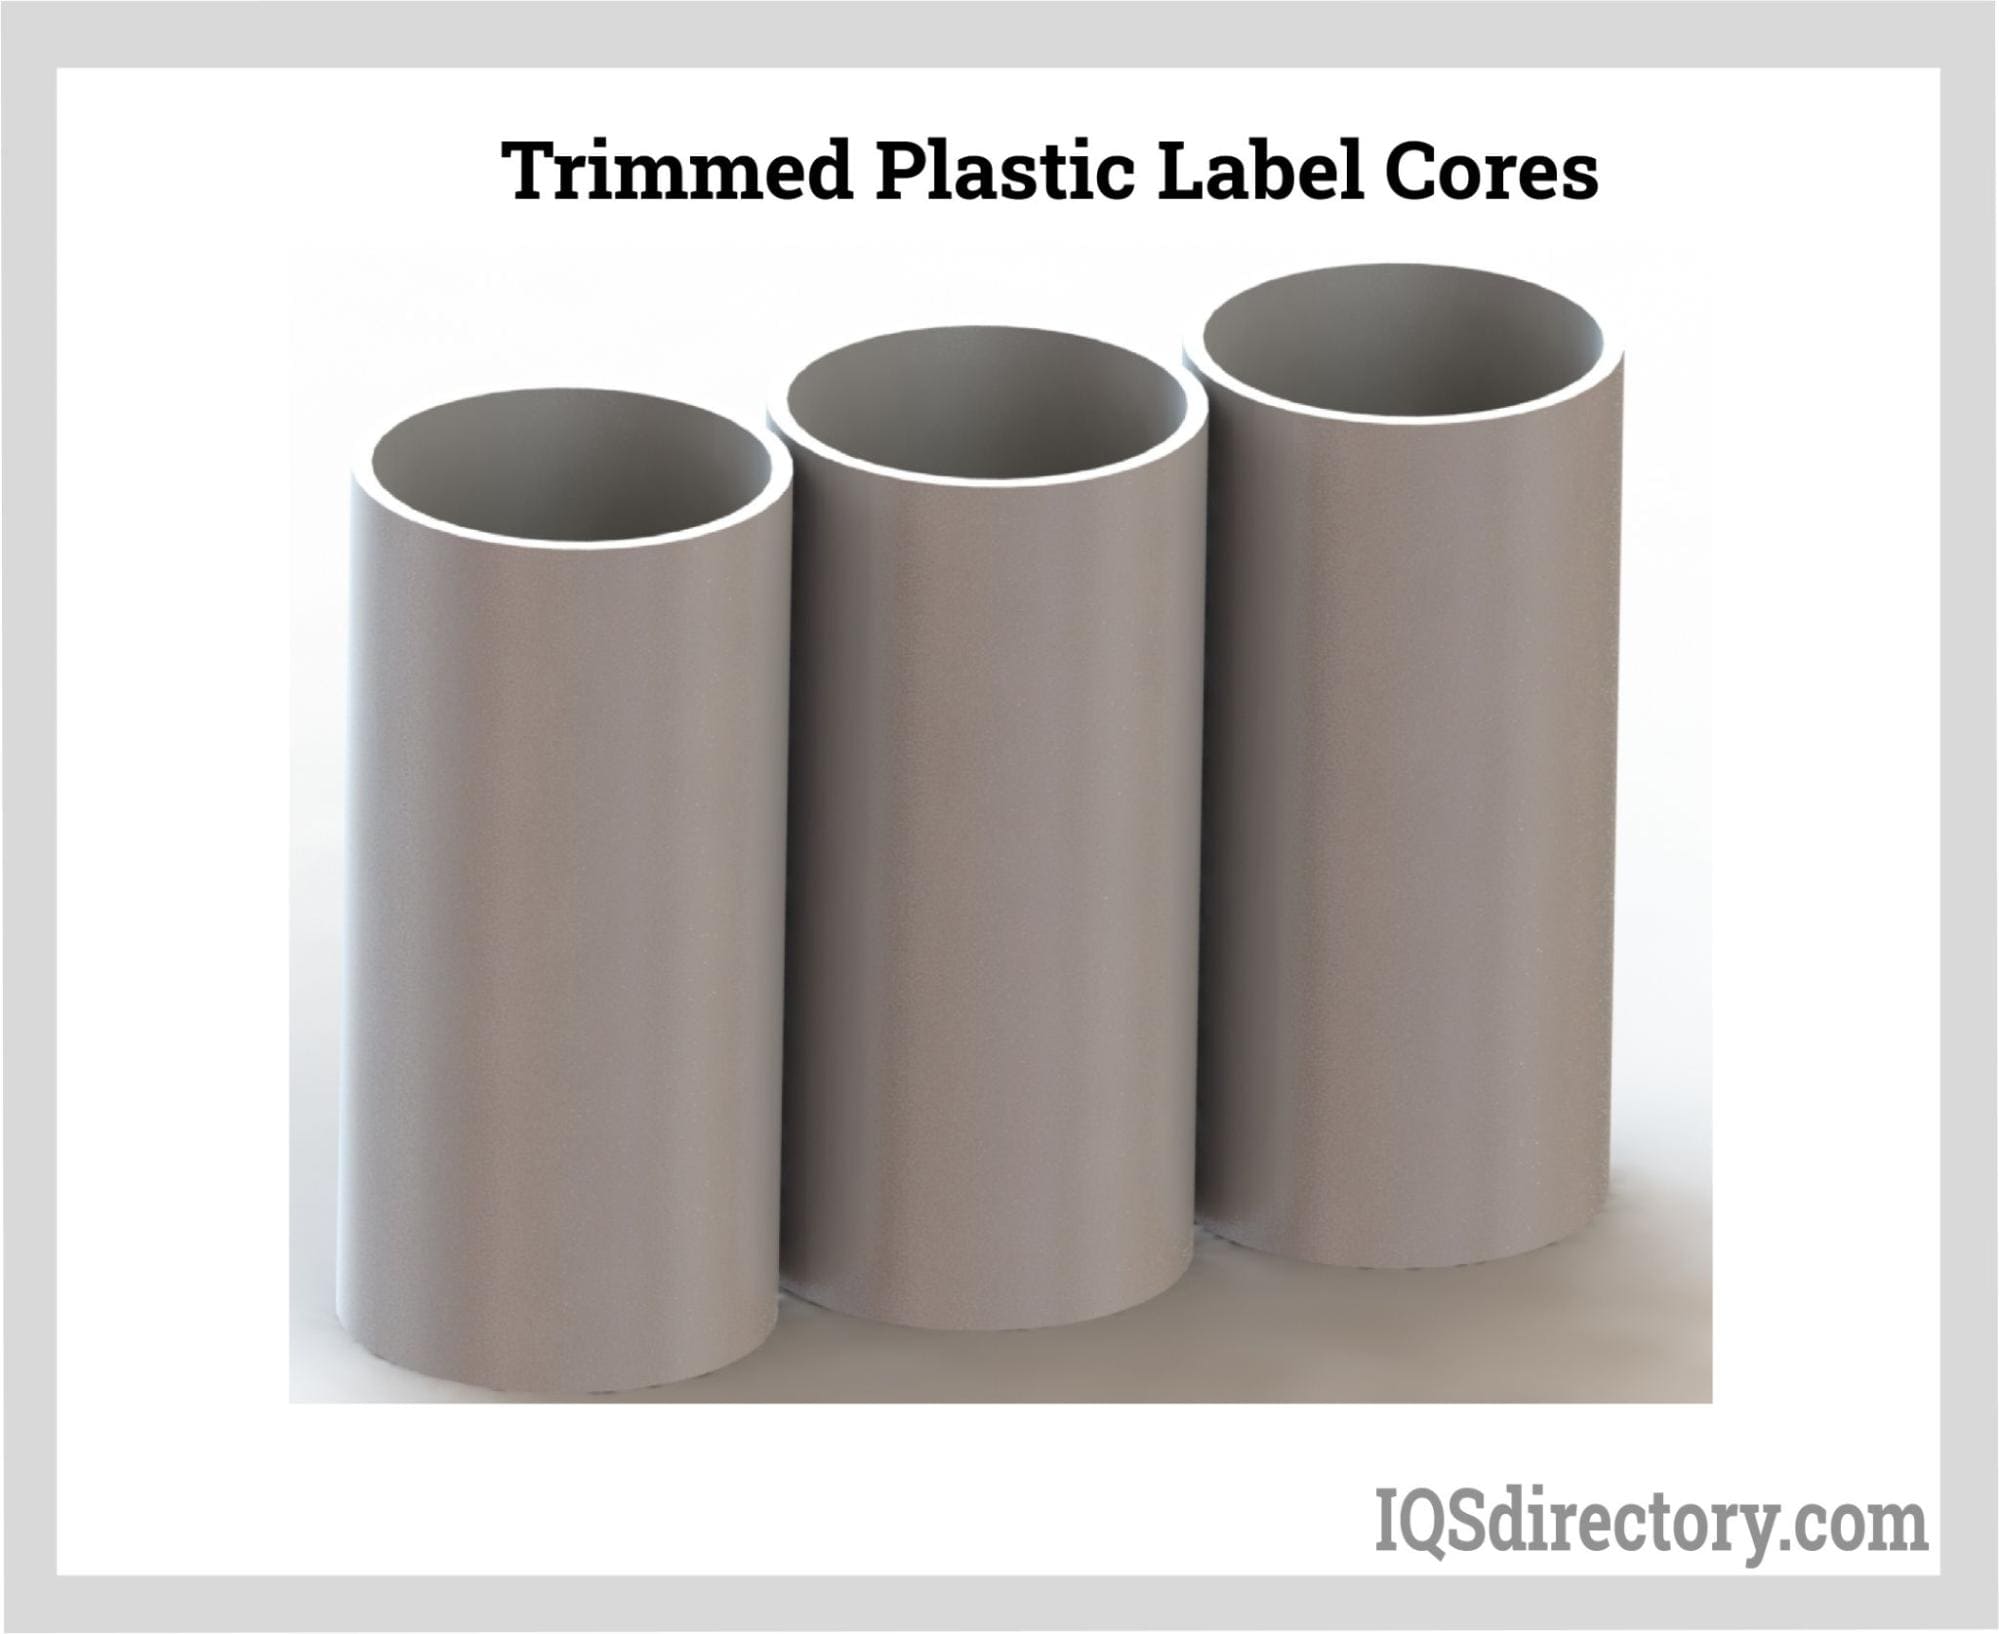 Trimmed Plastic Label Cores